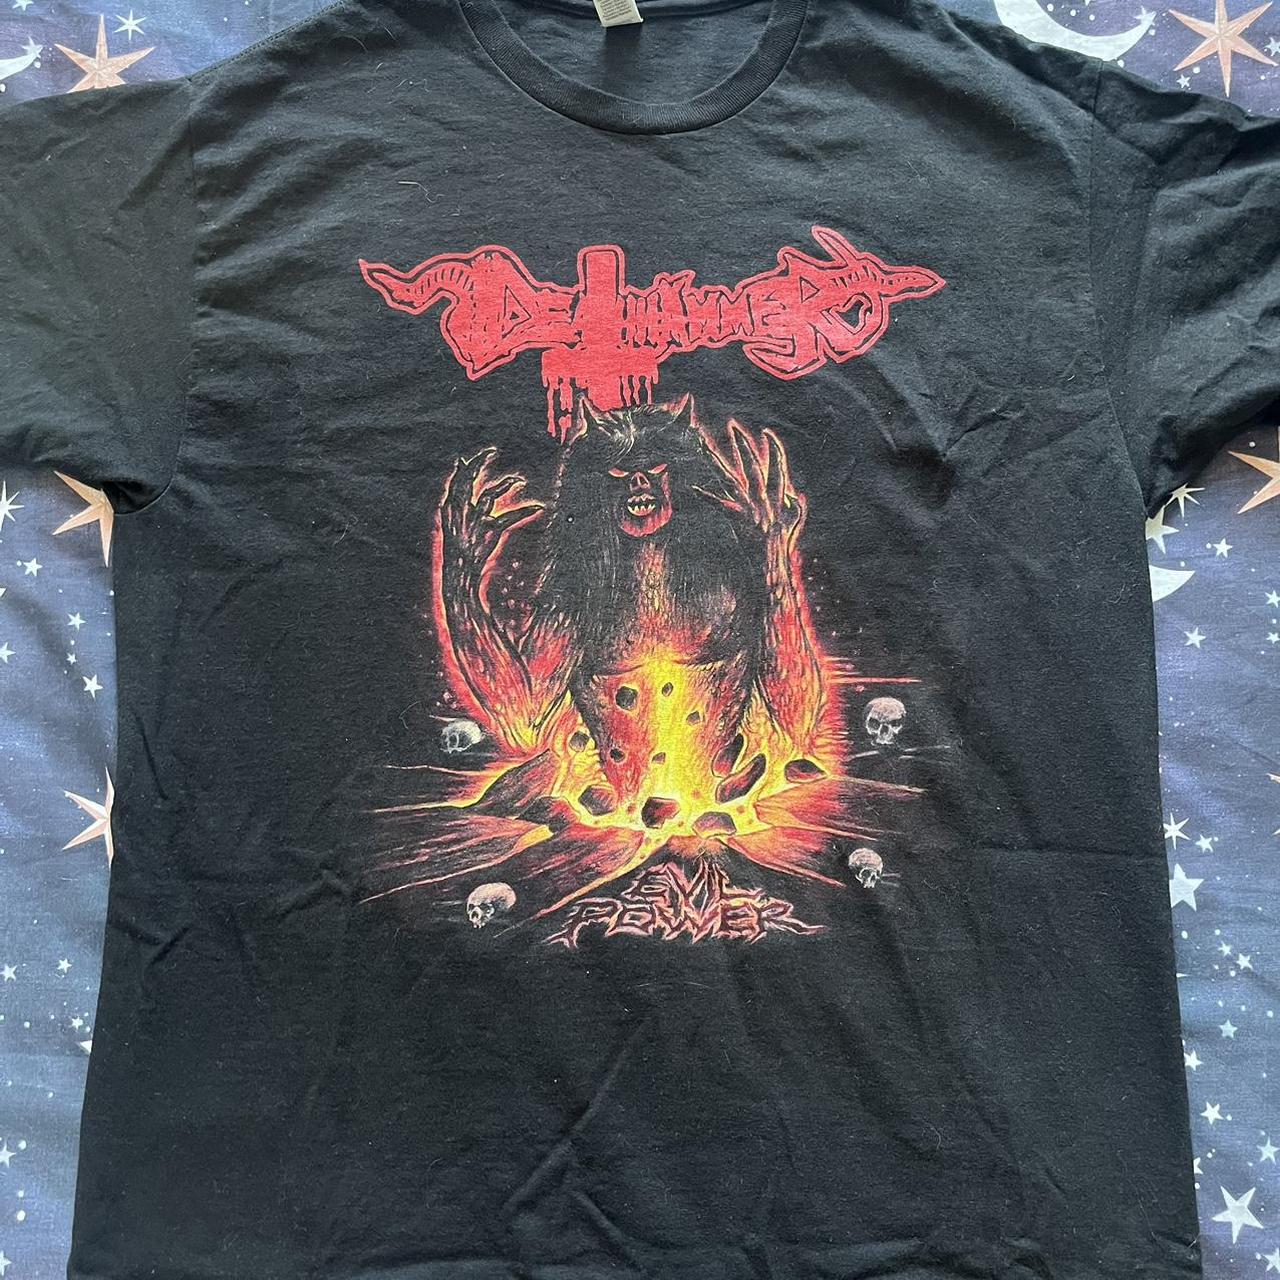 Deathhammer t shirt, size large #metal #thrash - Depop